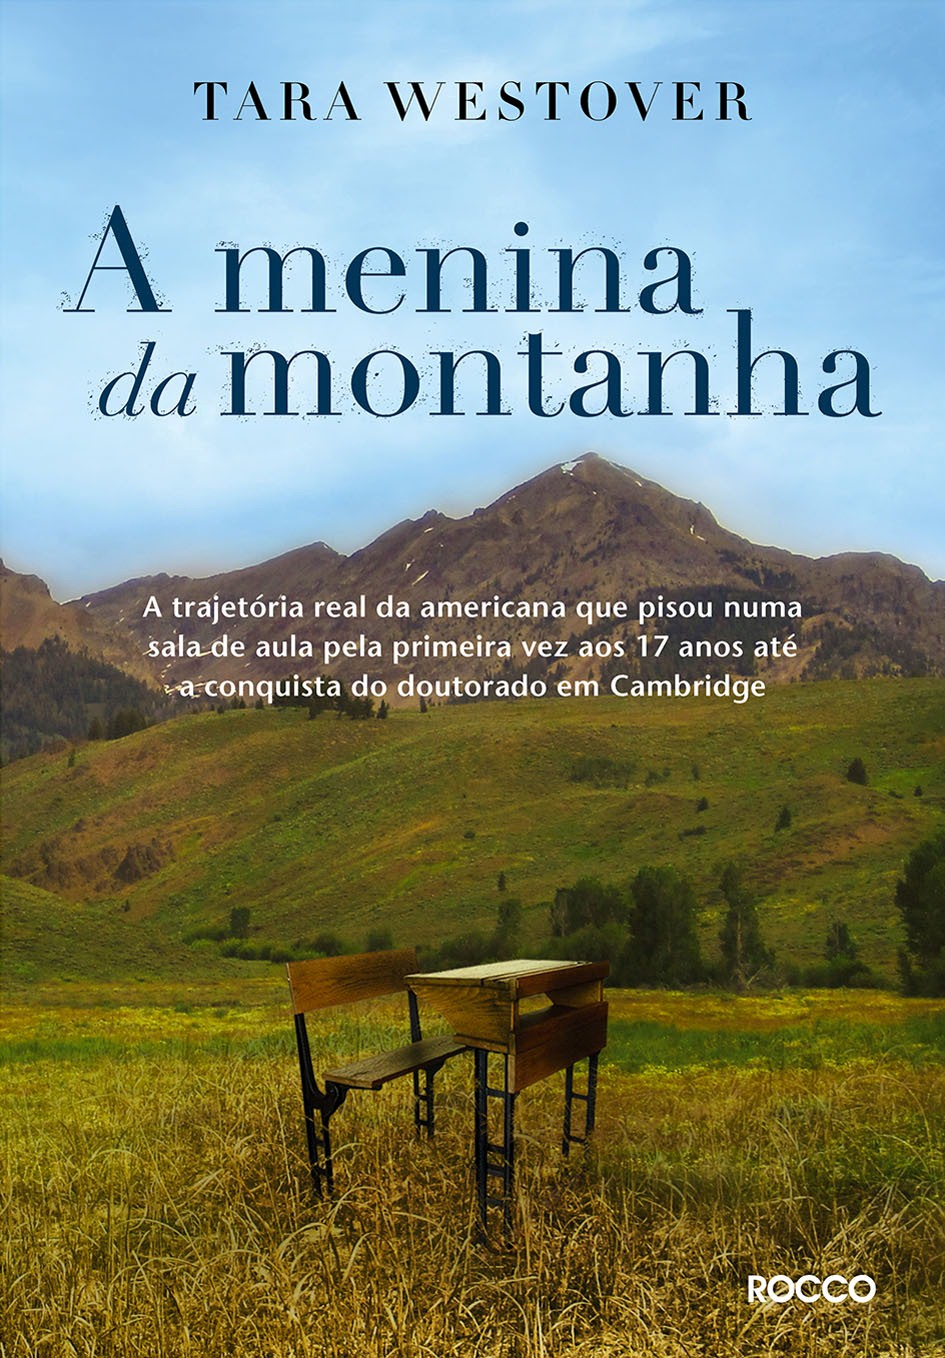 Capa do livro "A menina da montanha"